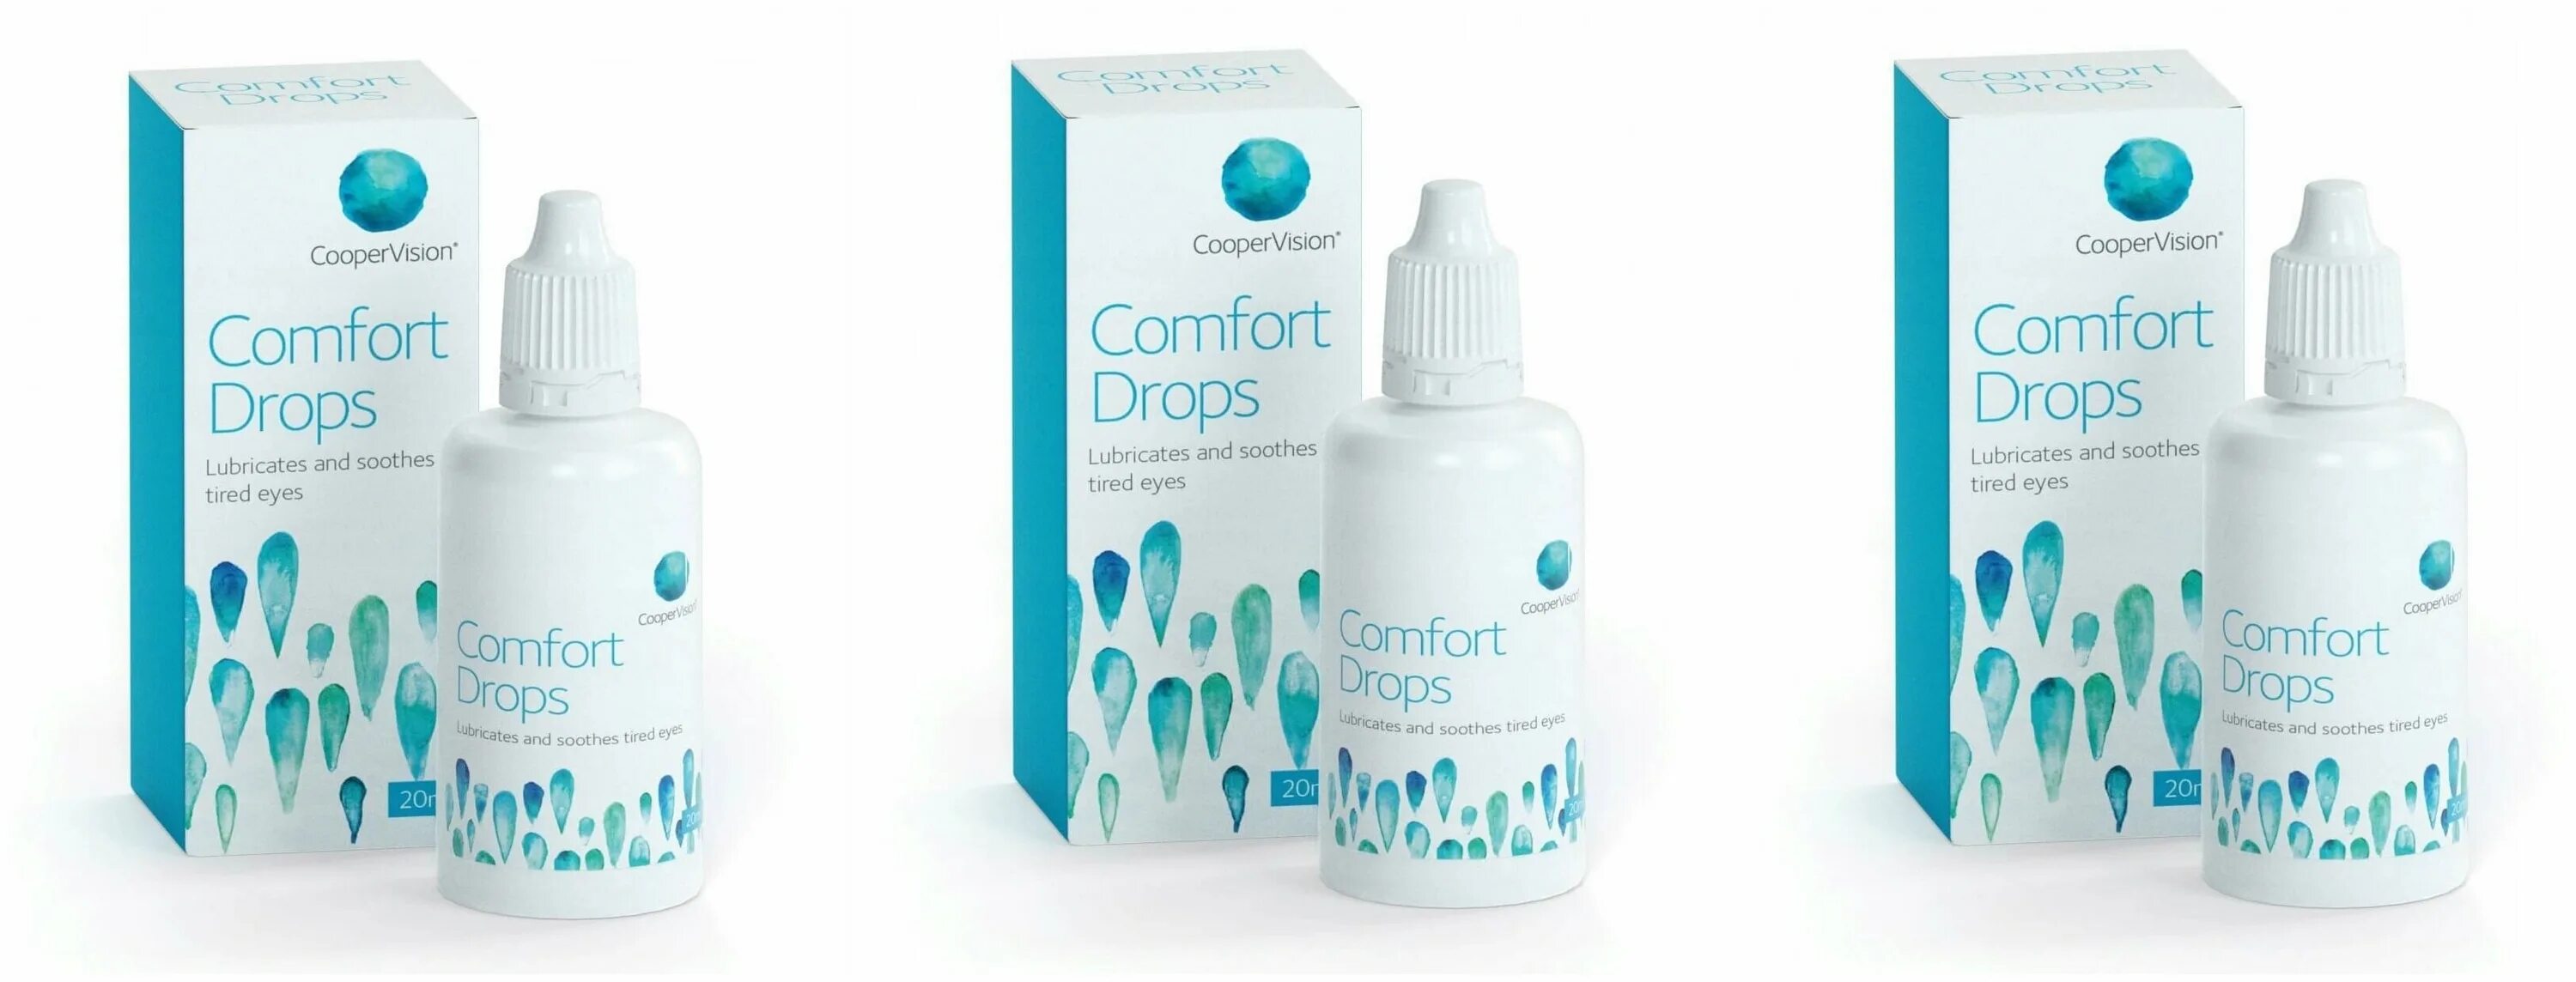 Avizor Comfort Drops 15 мл. Капли для линз комфорт Дропс. Авизор комфорт капли для увлажнения глаз. Р/Р многофункциональный Comfort Drops.